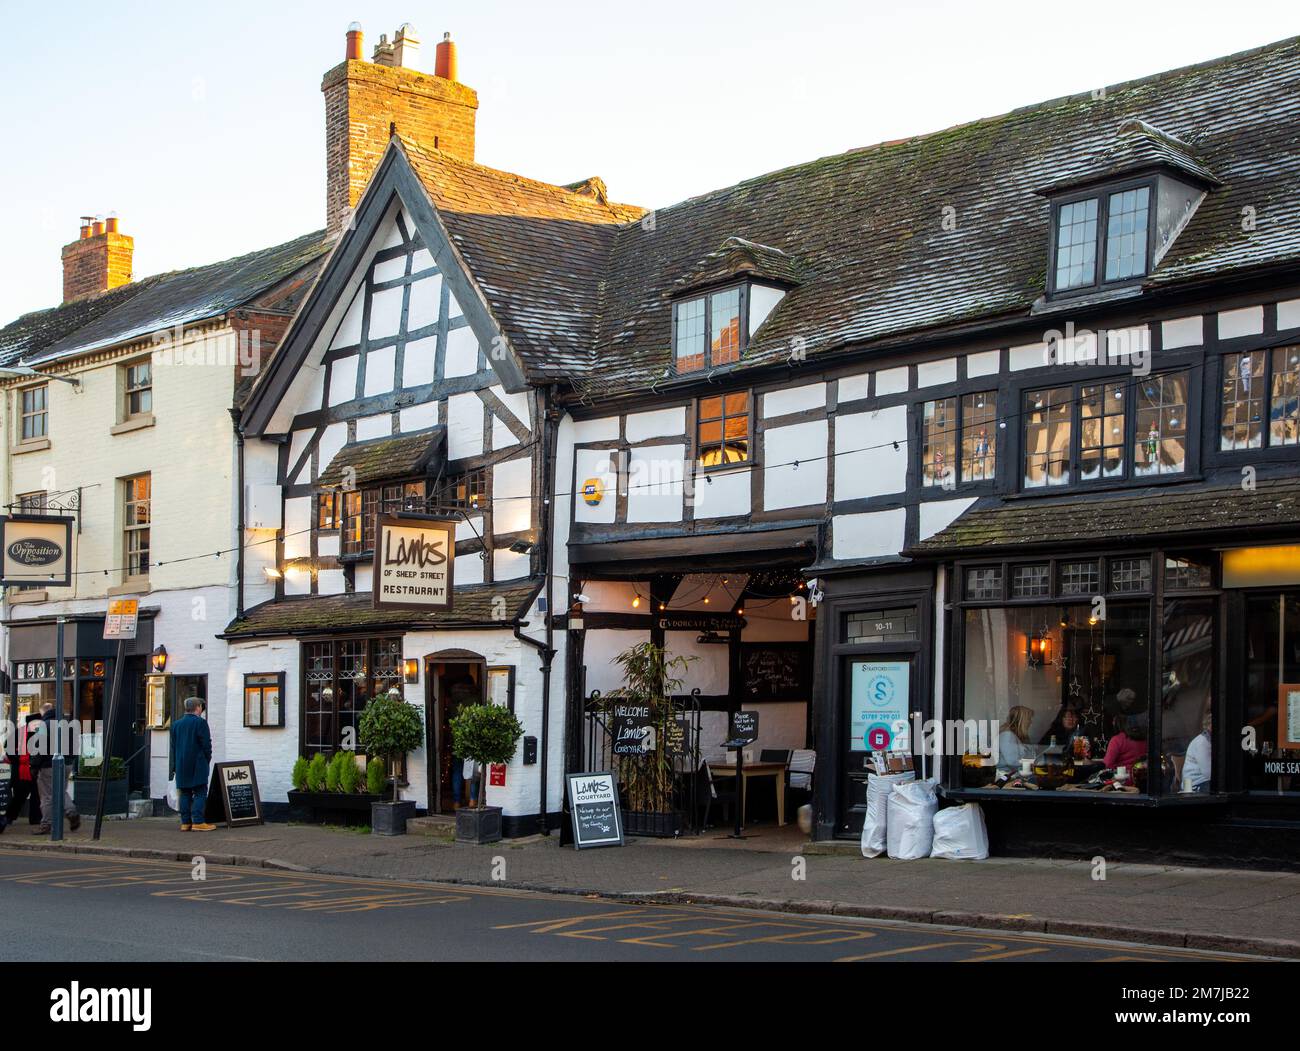 Il ristorante Lambs si trova in Sheep Street, Stratford on Avon, uno degli edifici piu' vecchi della citta'. Risale agli inizi del XVI secolo Foto Stock